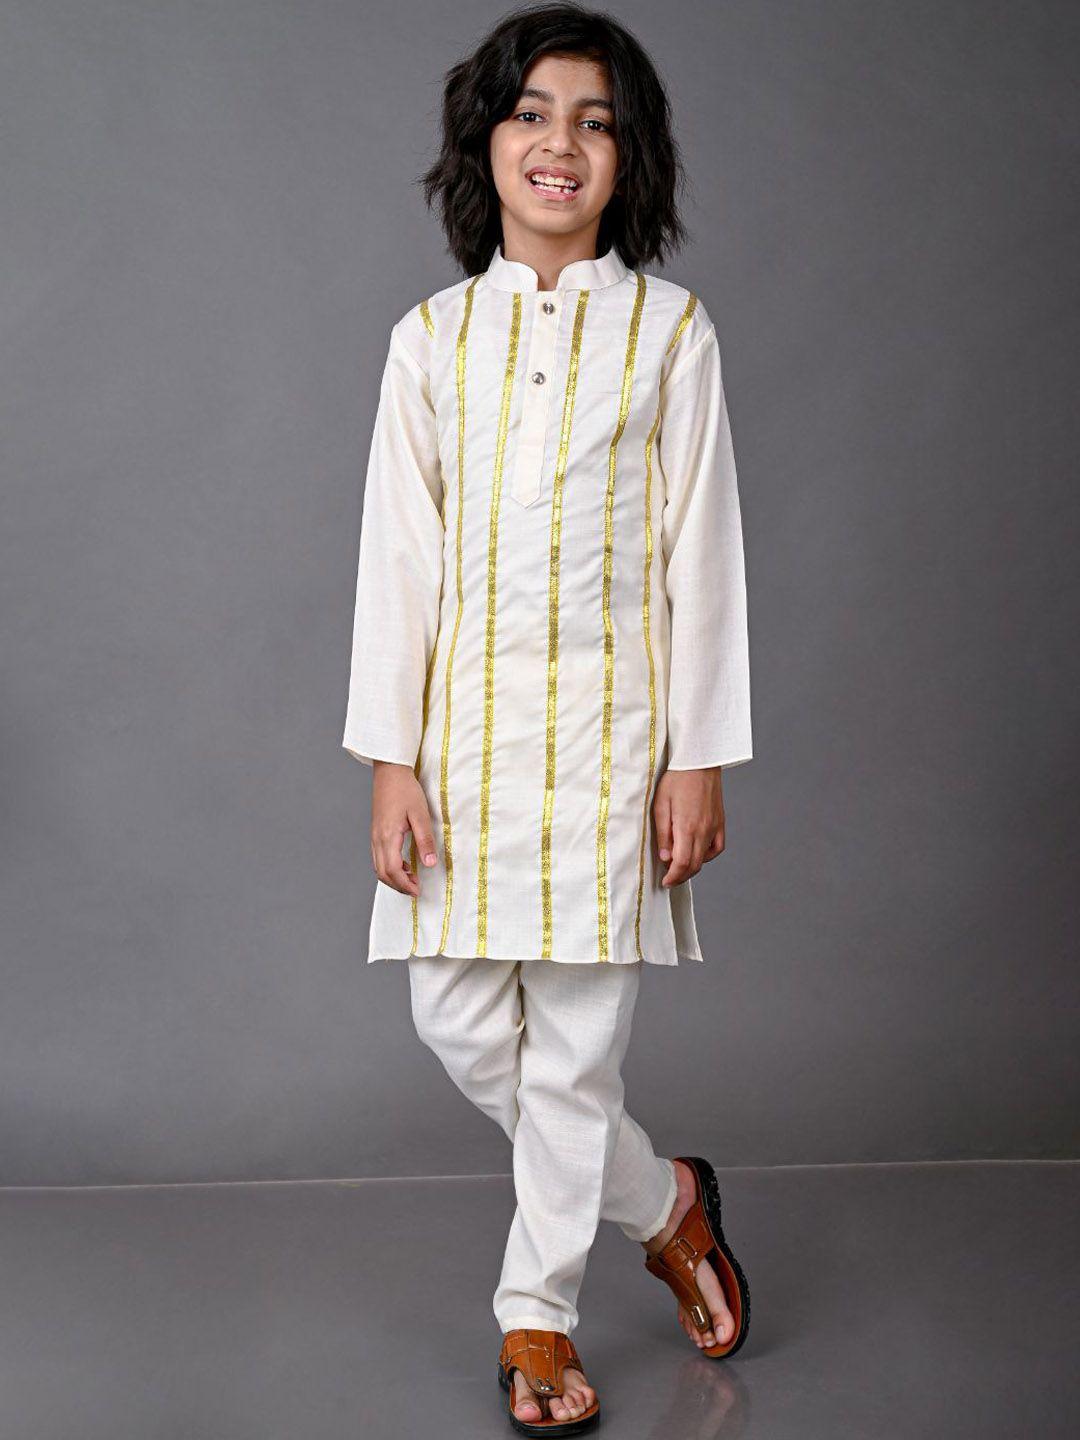 vesham boys beige striped lace work kurta with pyjamas